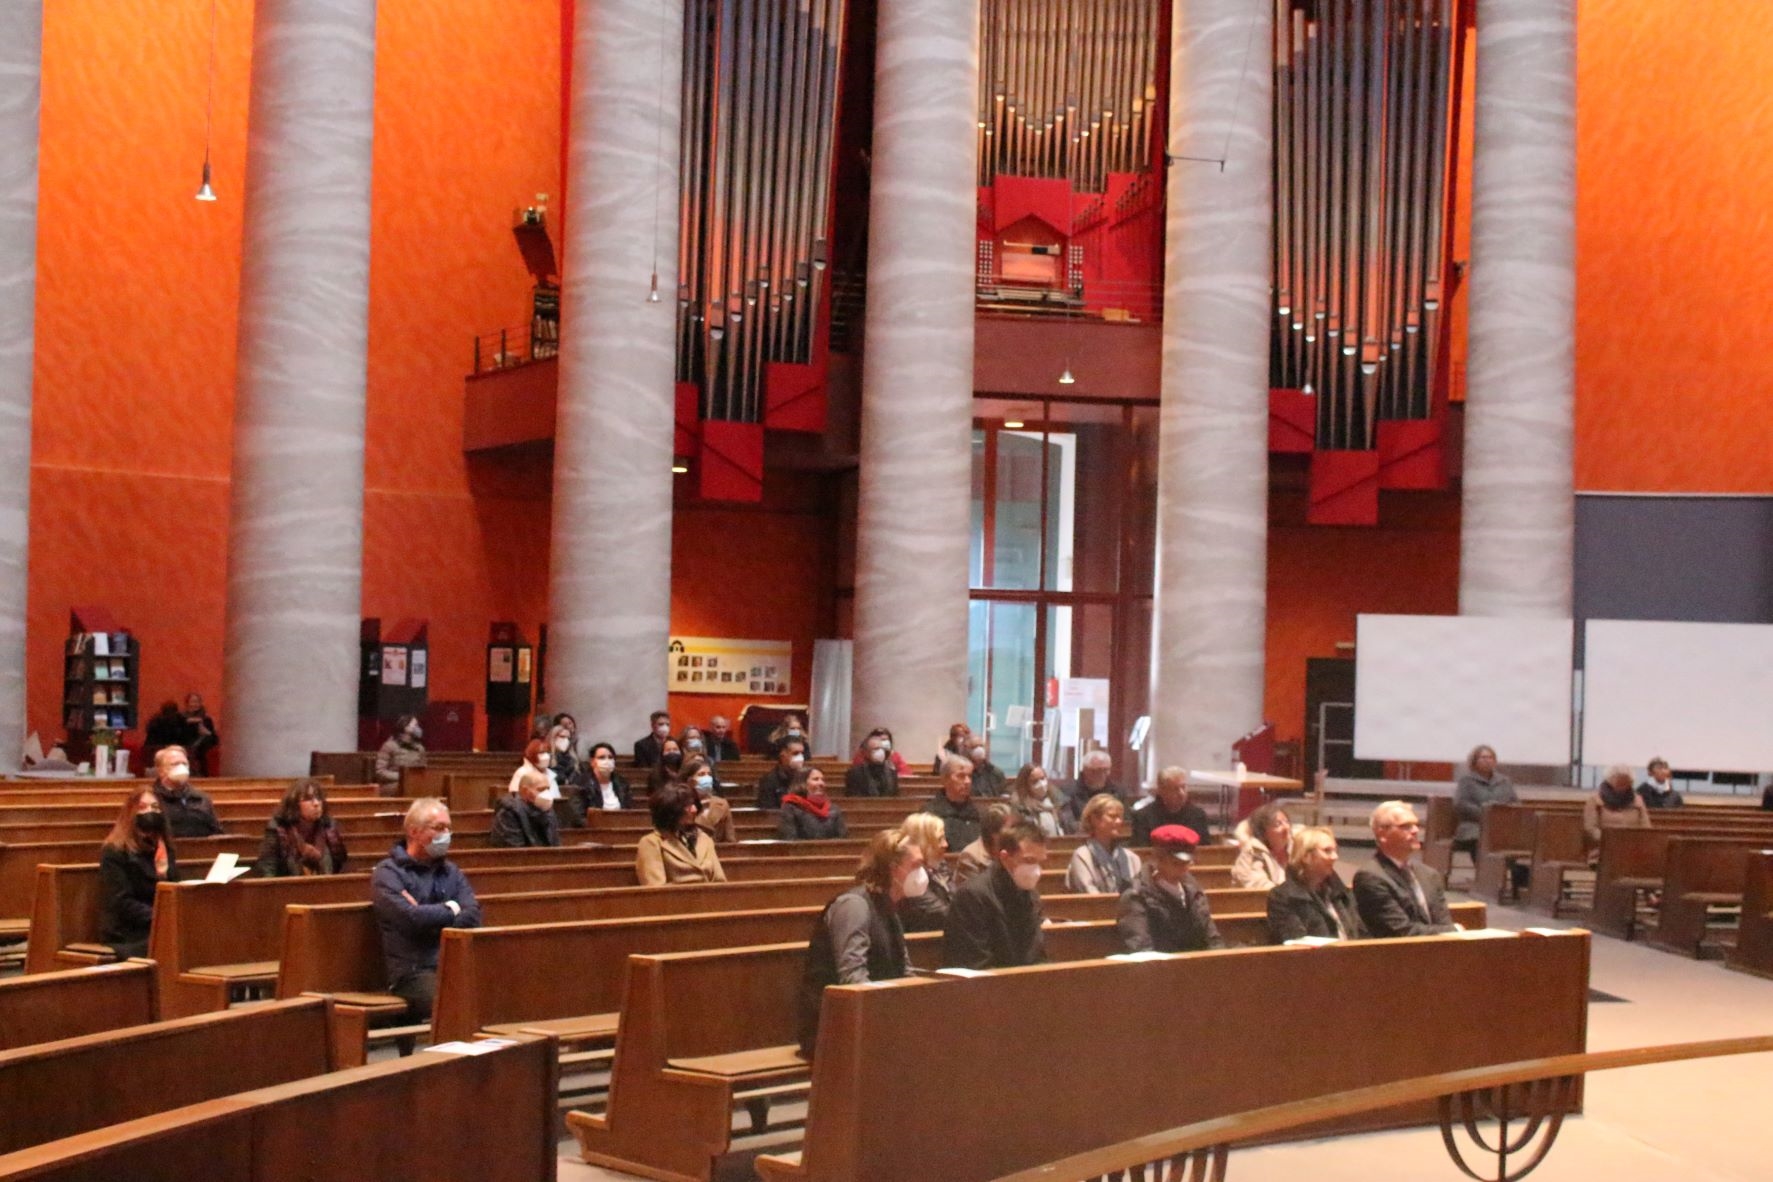 Blick auf die Gäste in der Kirche. (Caritasverband Darmstadt e. V.)